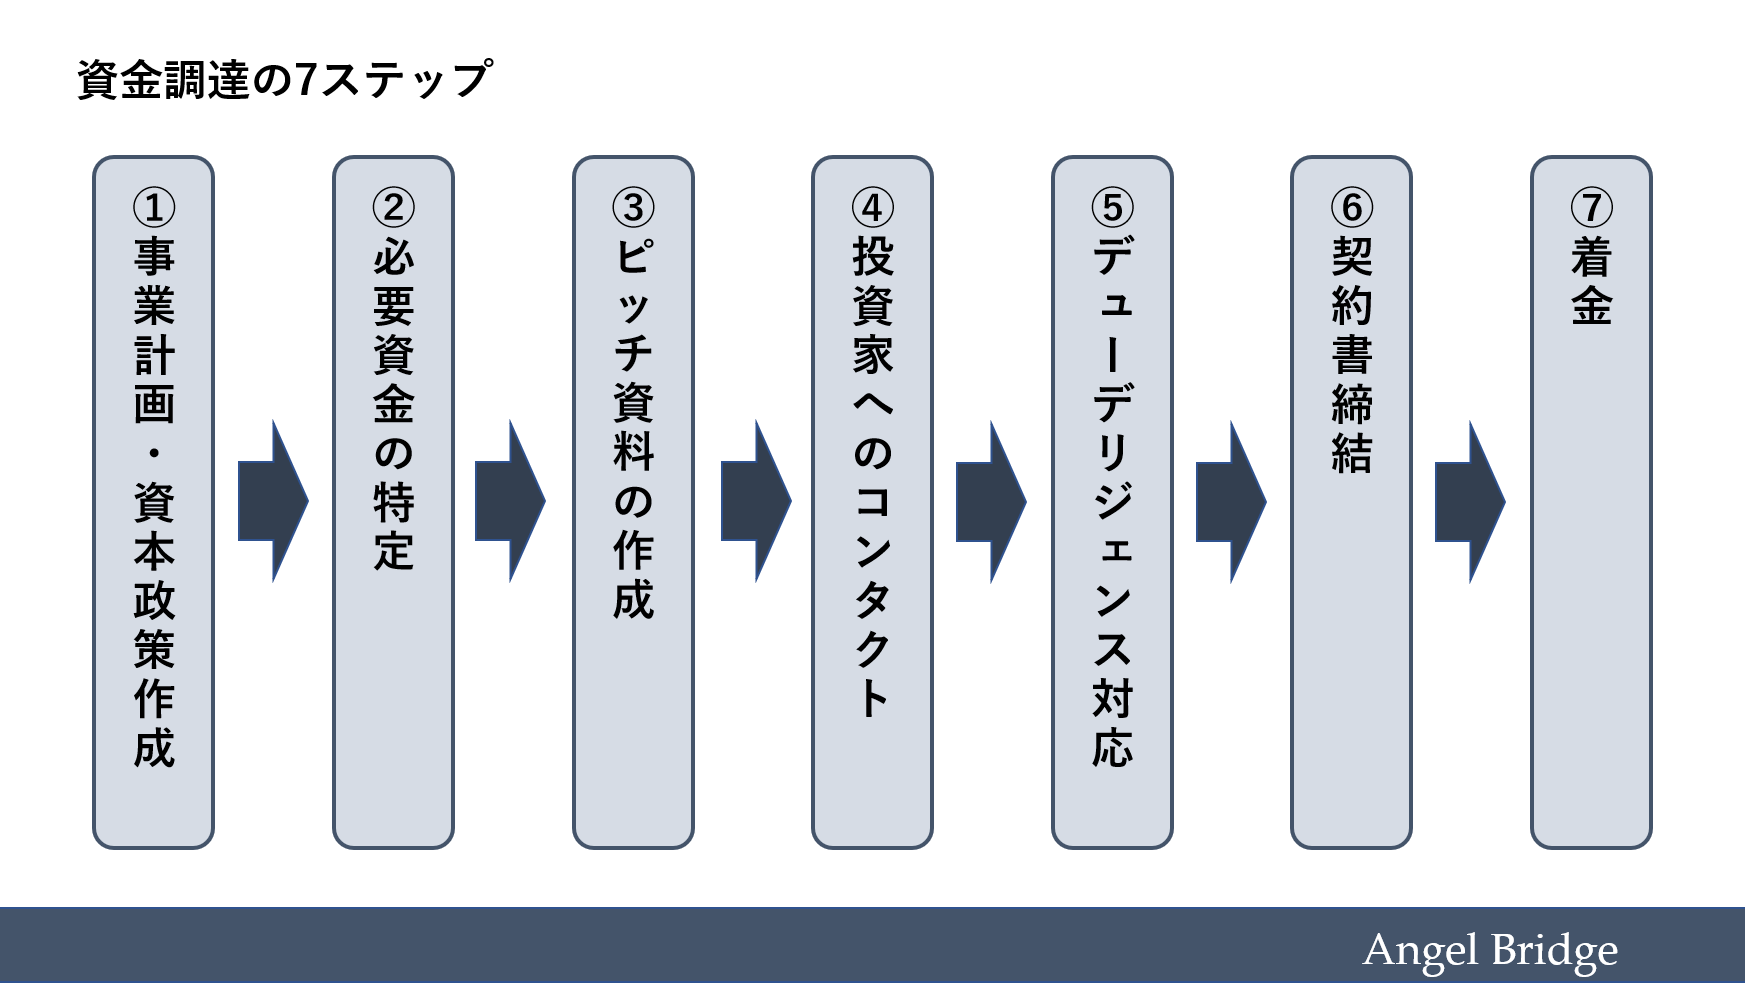 資金調達における7つのステップ